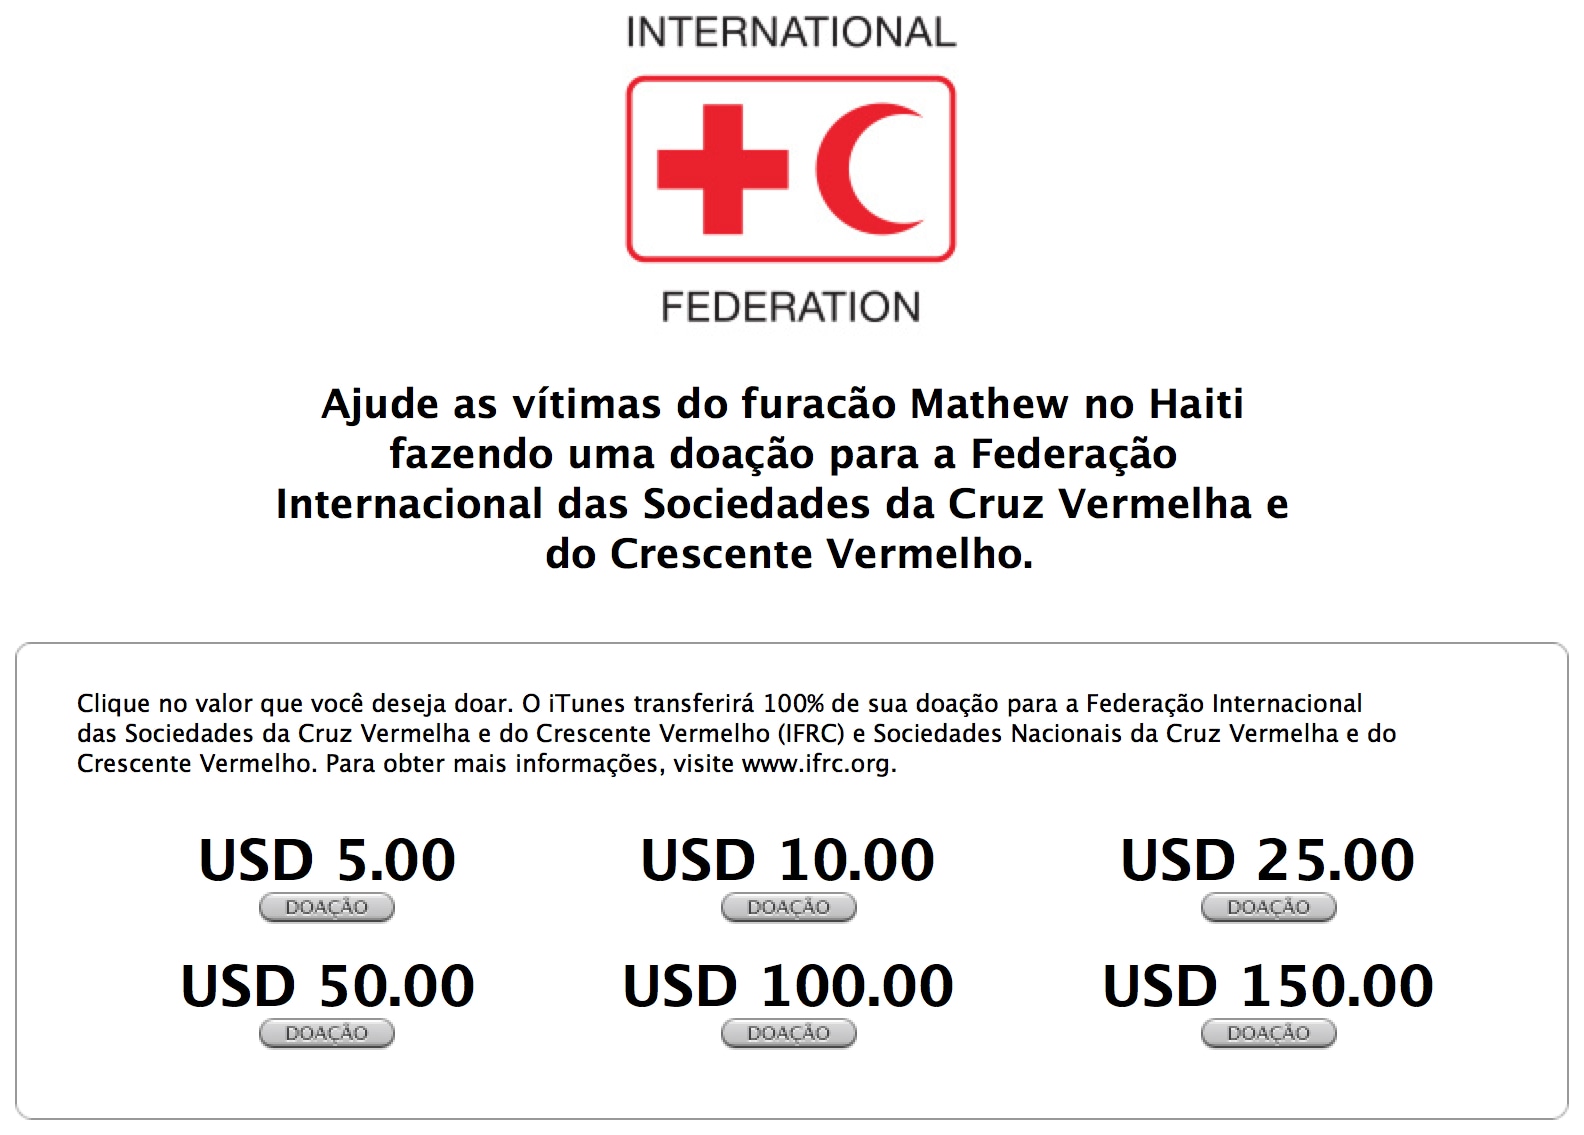 Página de doações para vítimas do furacão Matthew no iTunes